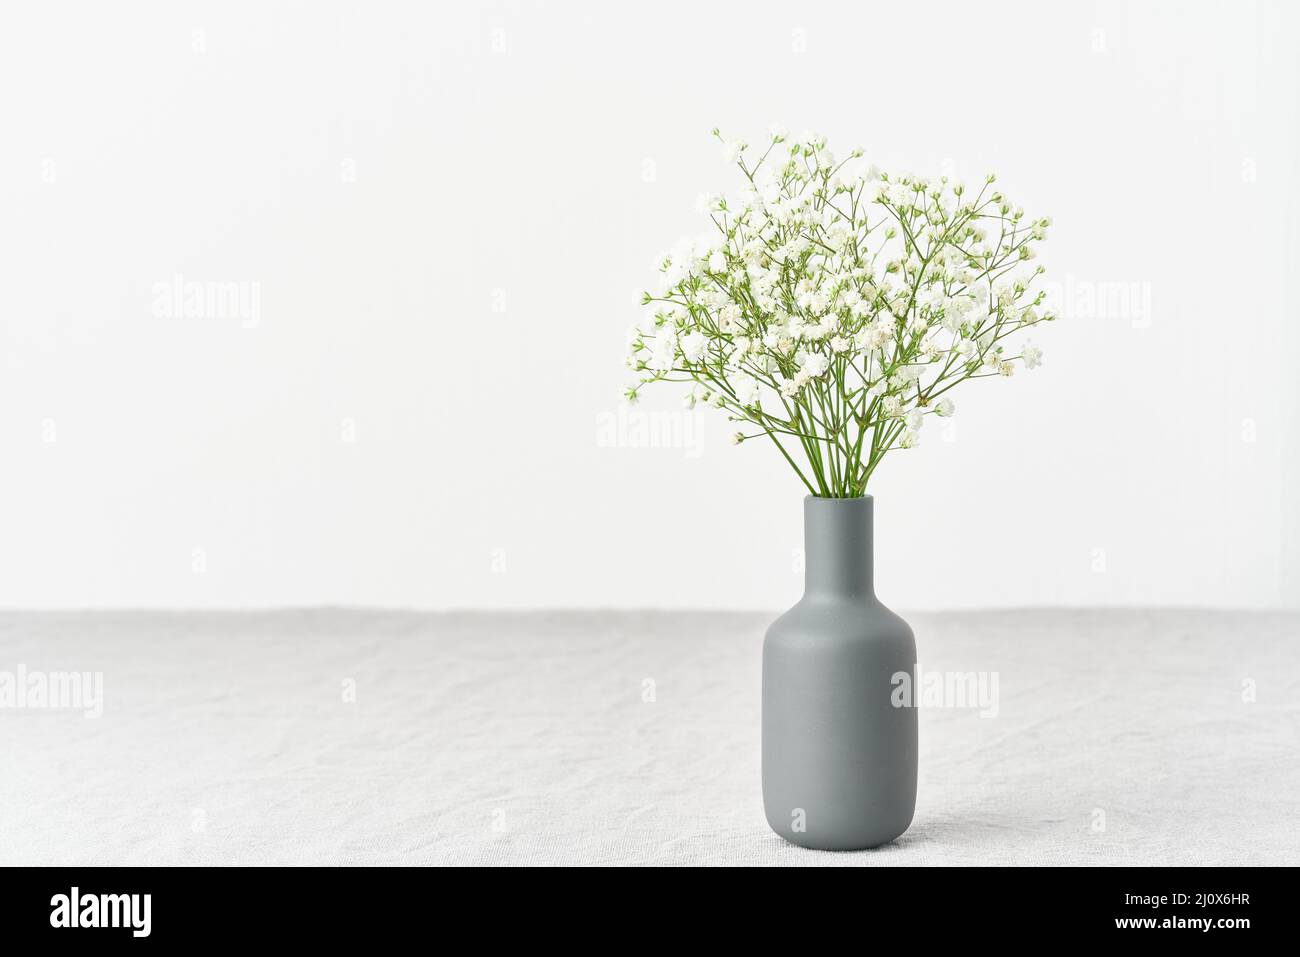 Gypsophila blüht in einer Vase. Weiches Licht, skandinavischer Minimalismus, Stockfoto